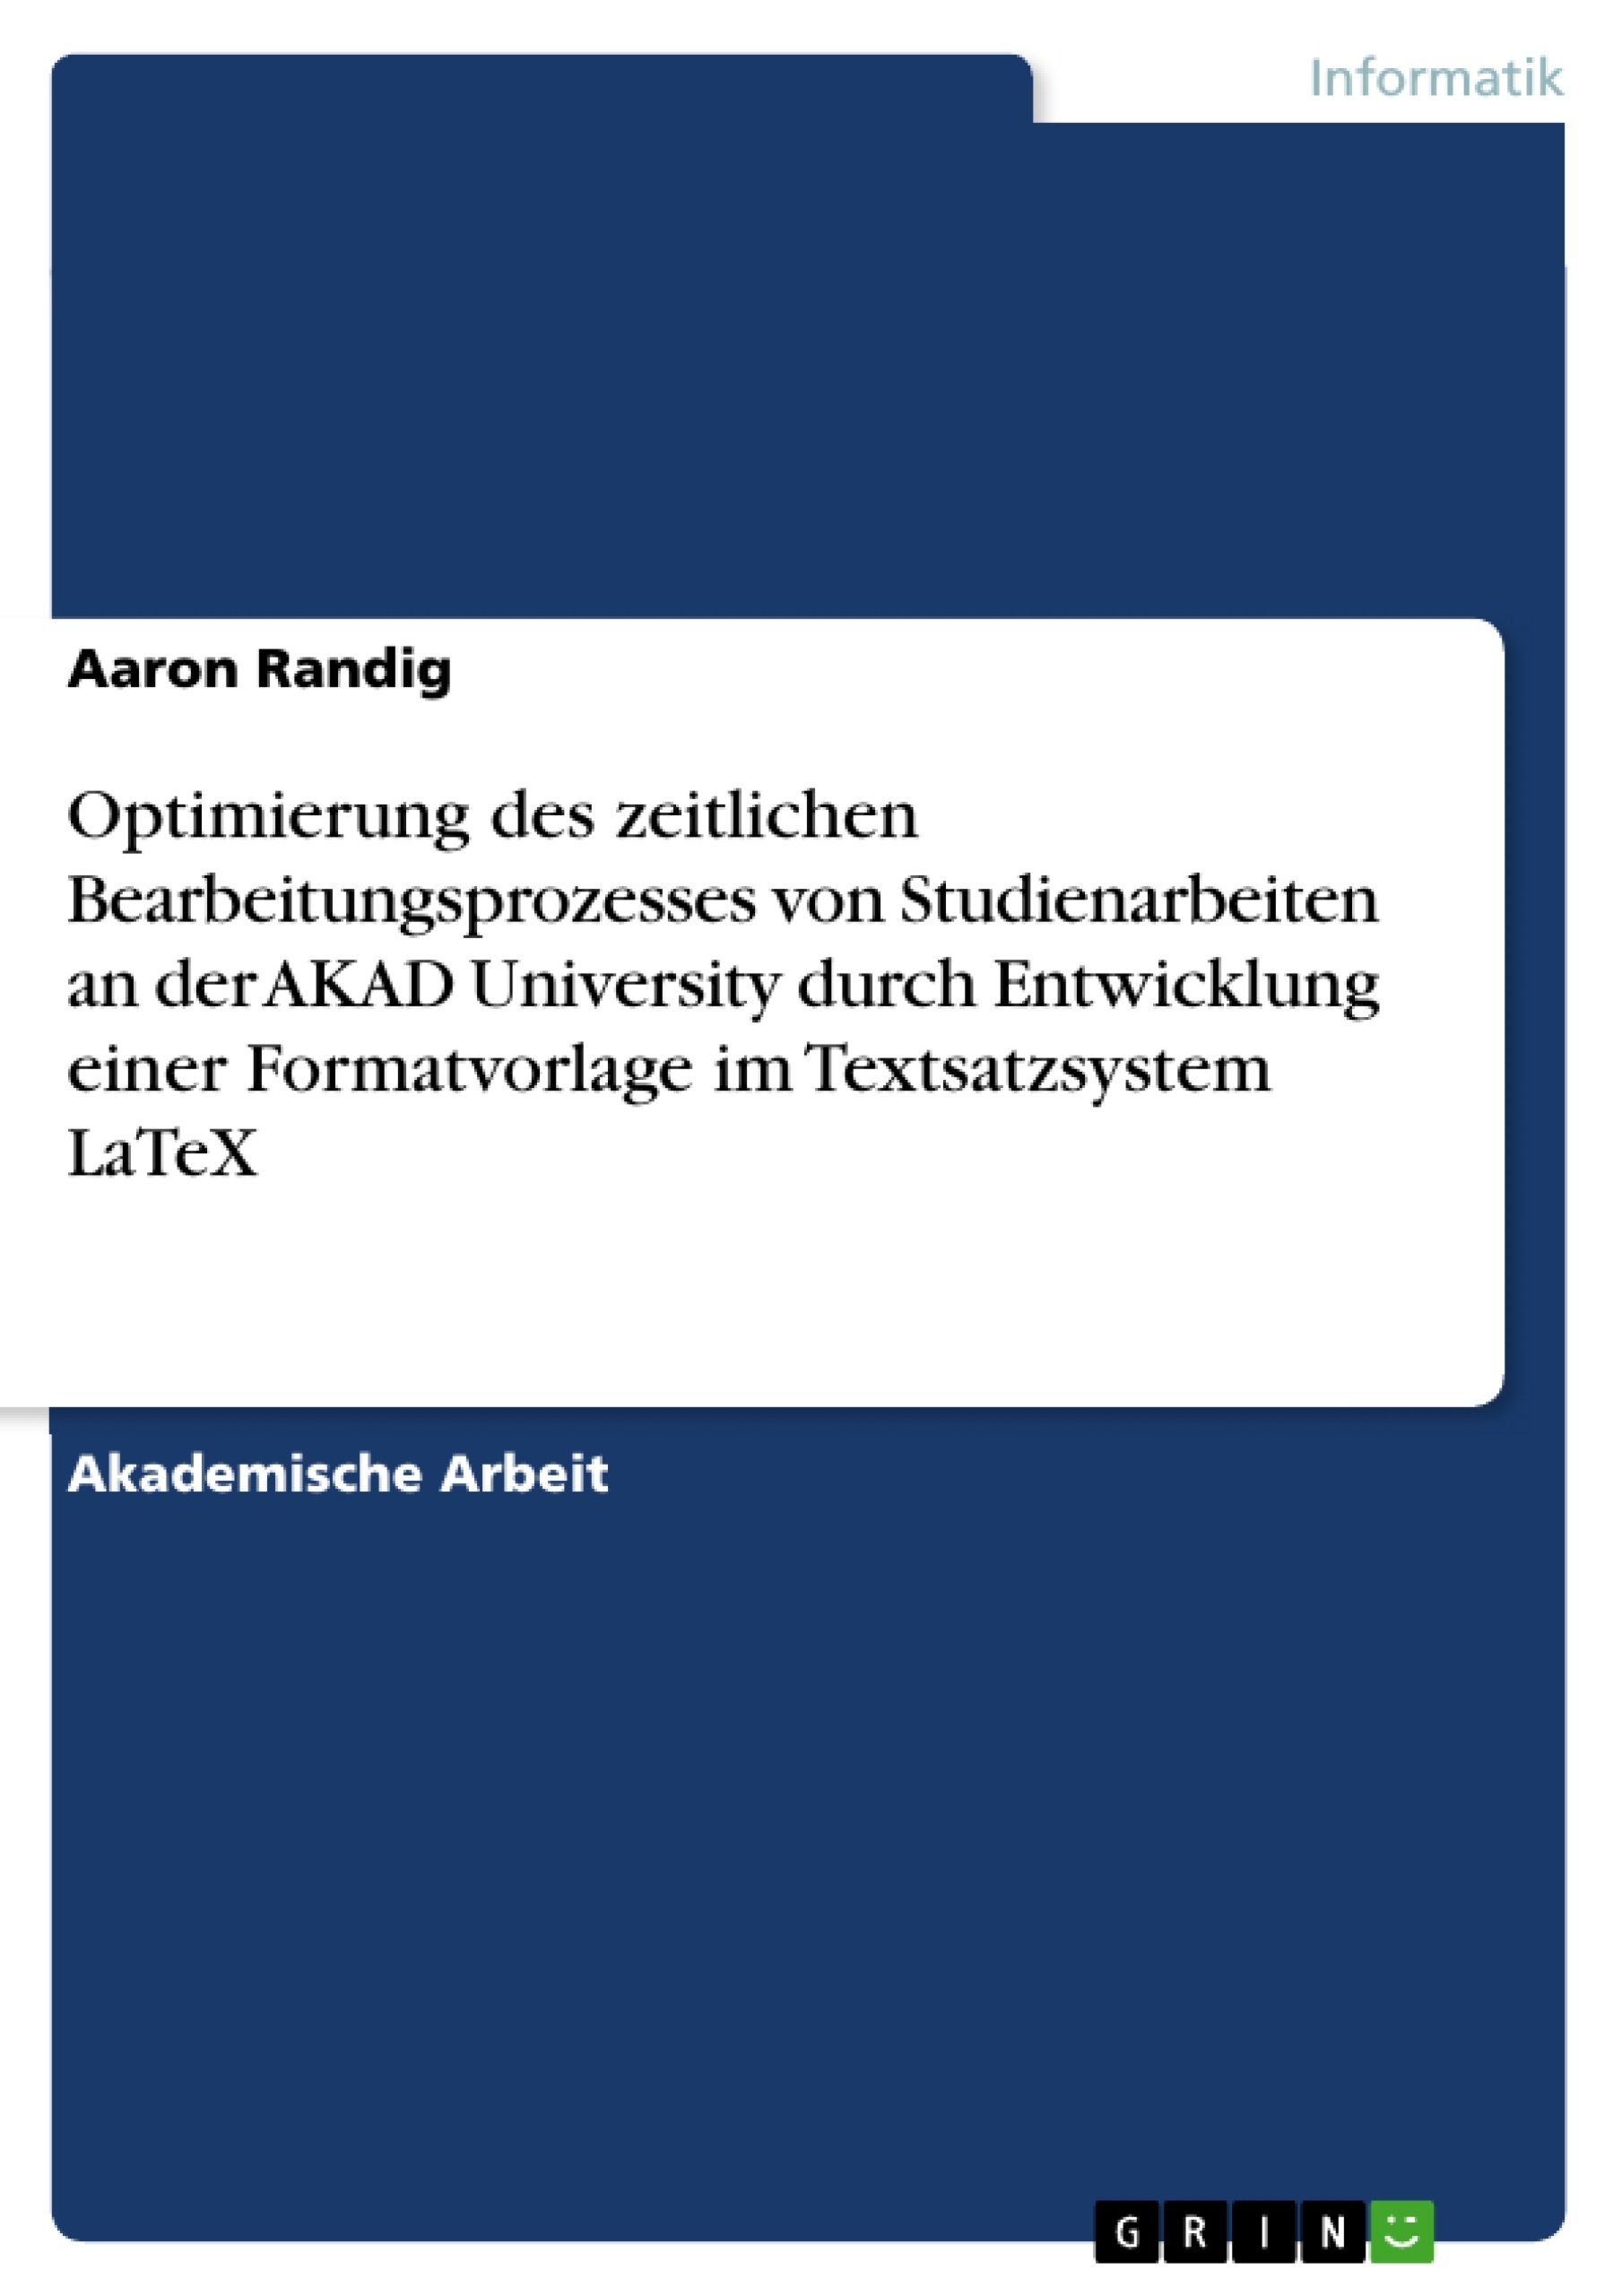 Título: Optimierung des zeitlichen Bearbeitungsprozesses von Studienarbeiten an der AKAD University durch Entwicklung einer Formatvorlage im Textsatzsystem LaTeX